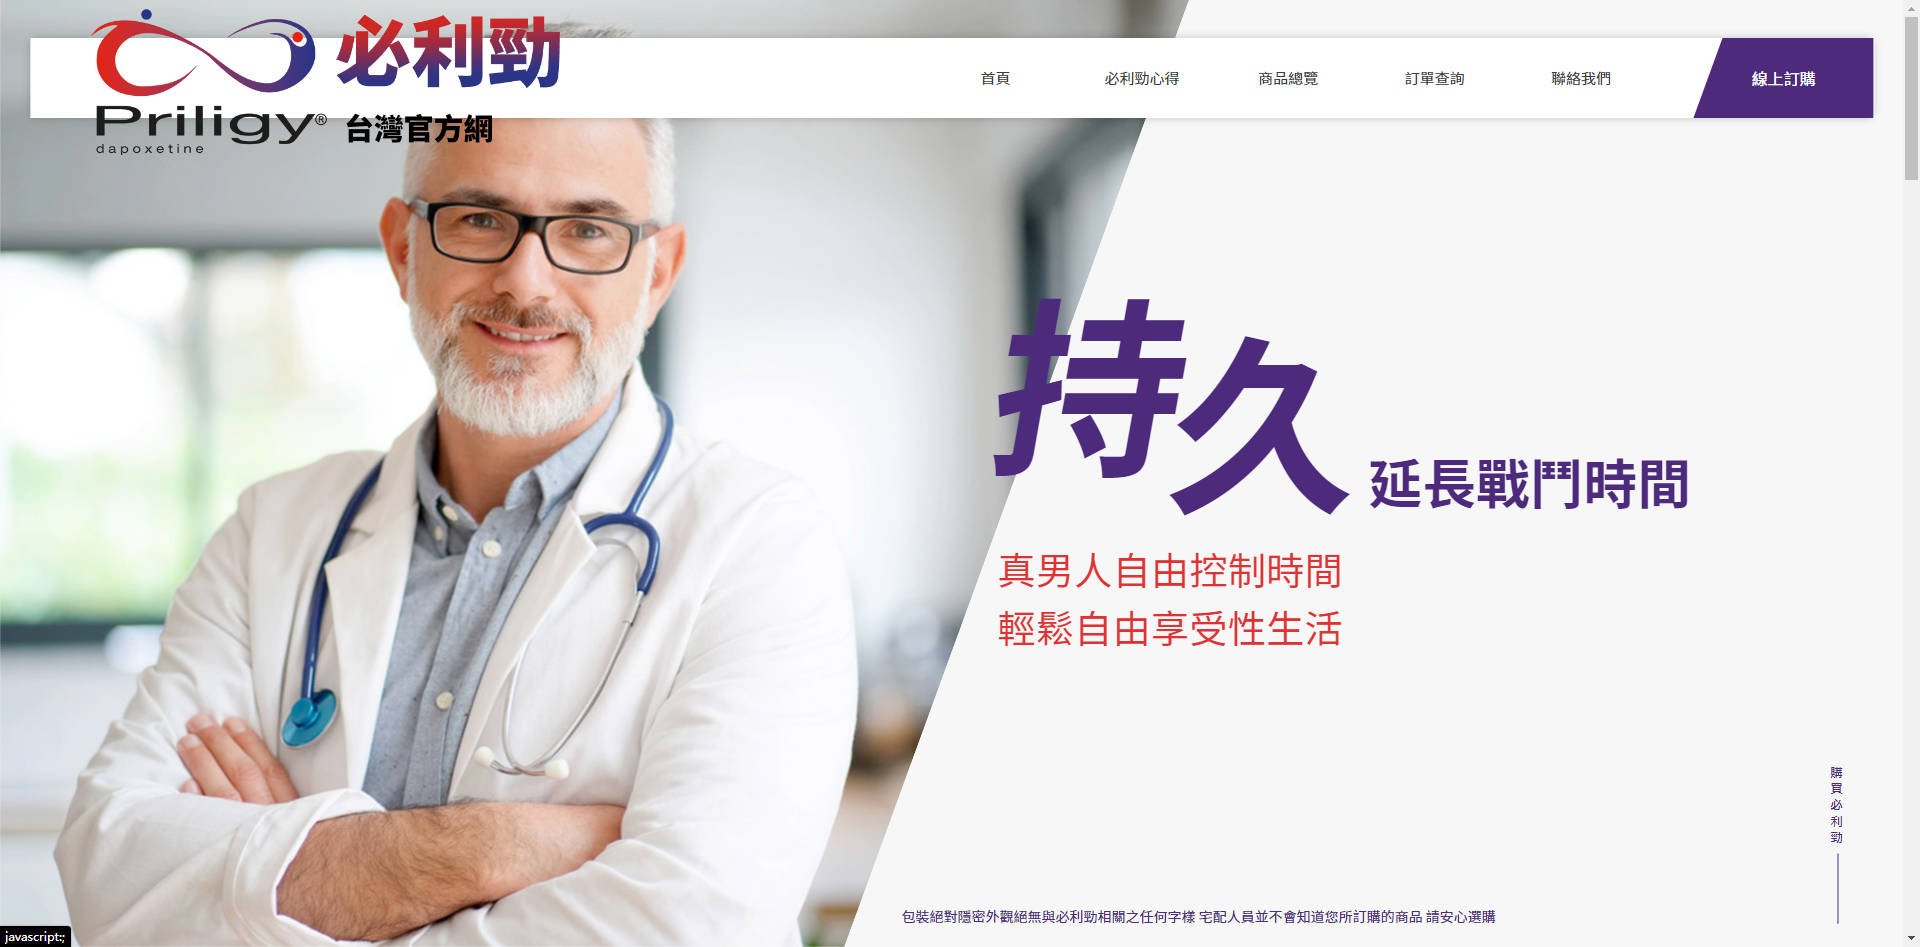 這是必利勁台灣官方網站